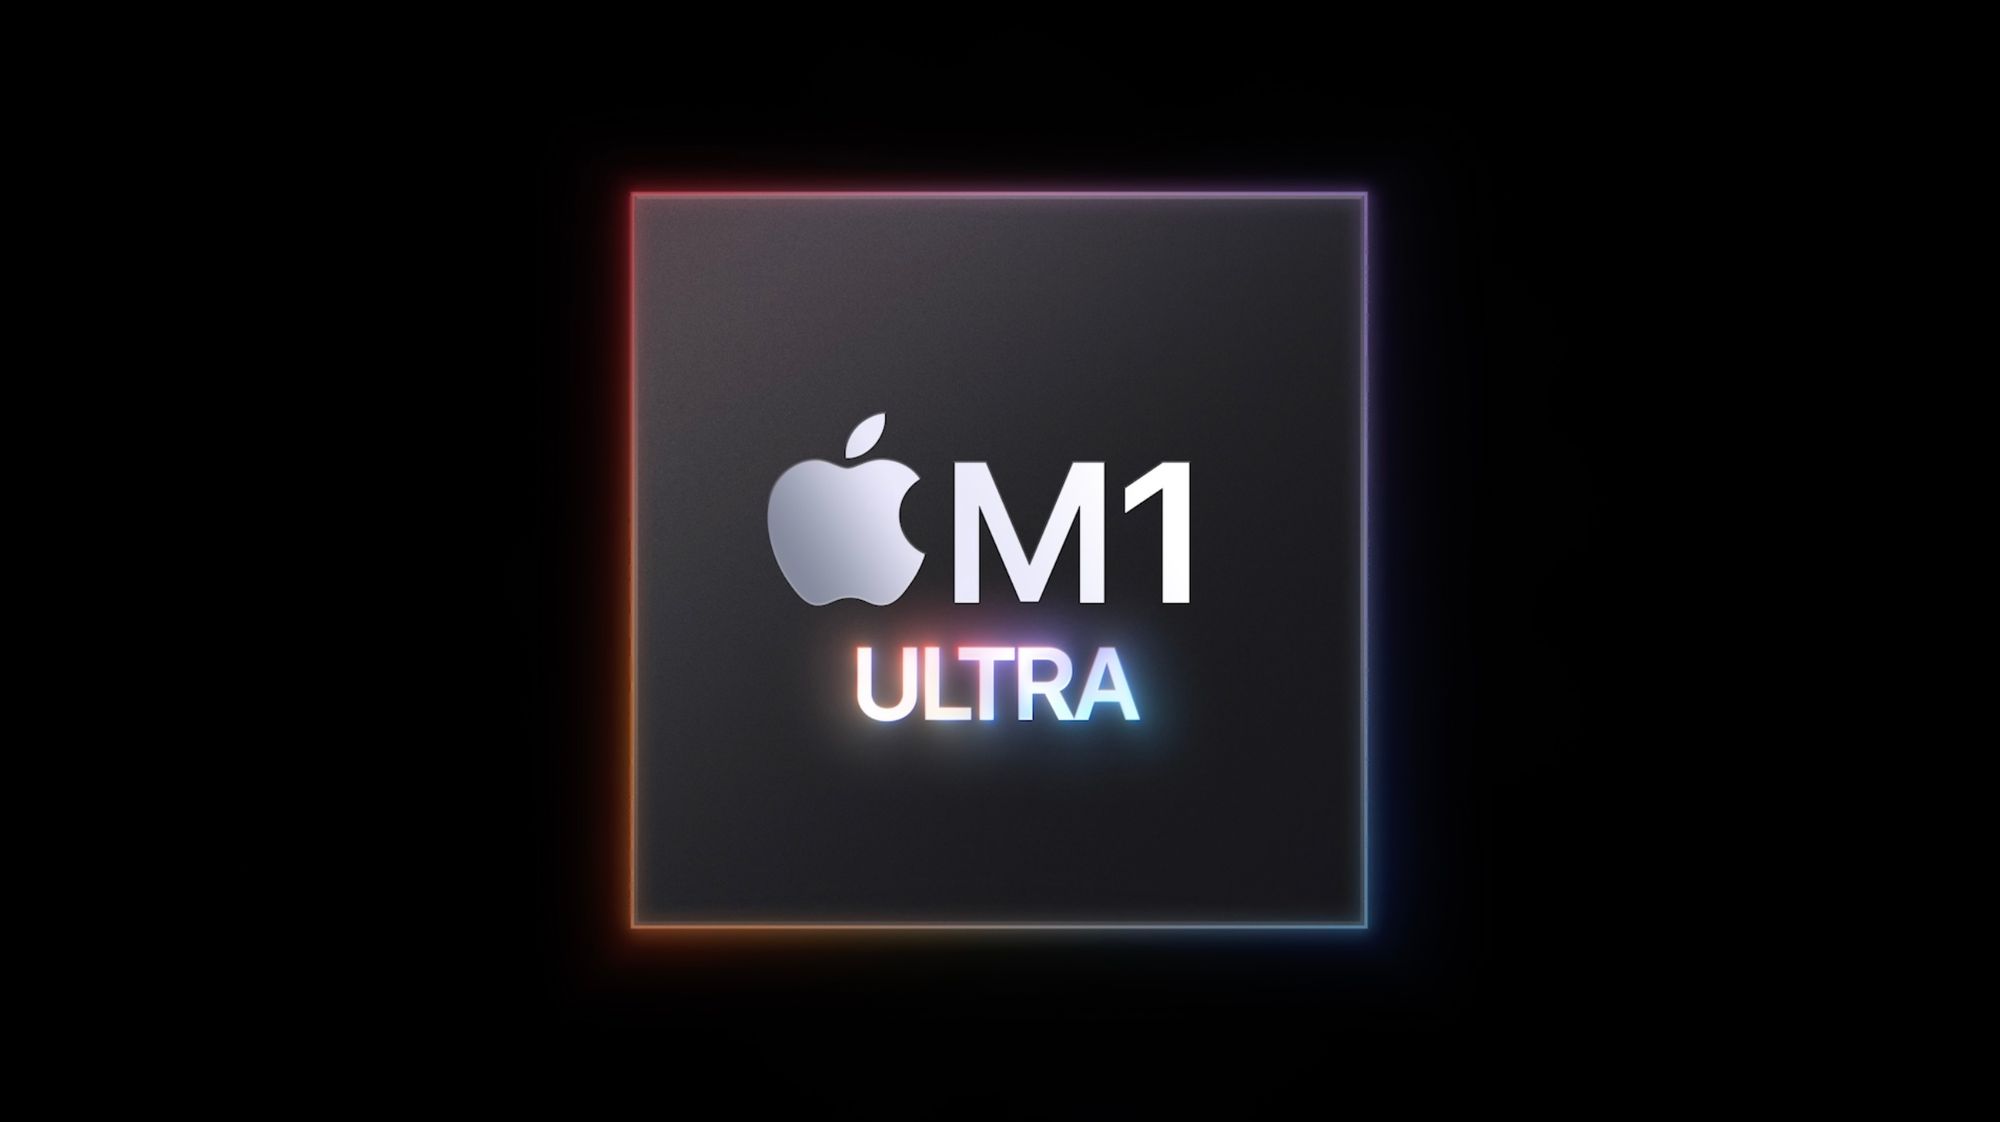 M1 Ultra на 60% быстрее, чем 28-ядерный Mac Pro, а GPU на 80% быстрее, чем самая дорогая видеокарта Radeon Pro W6900X